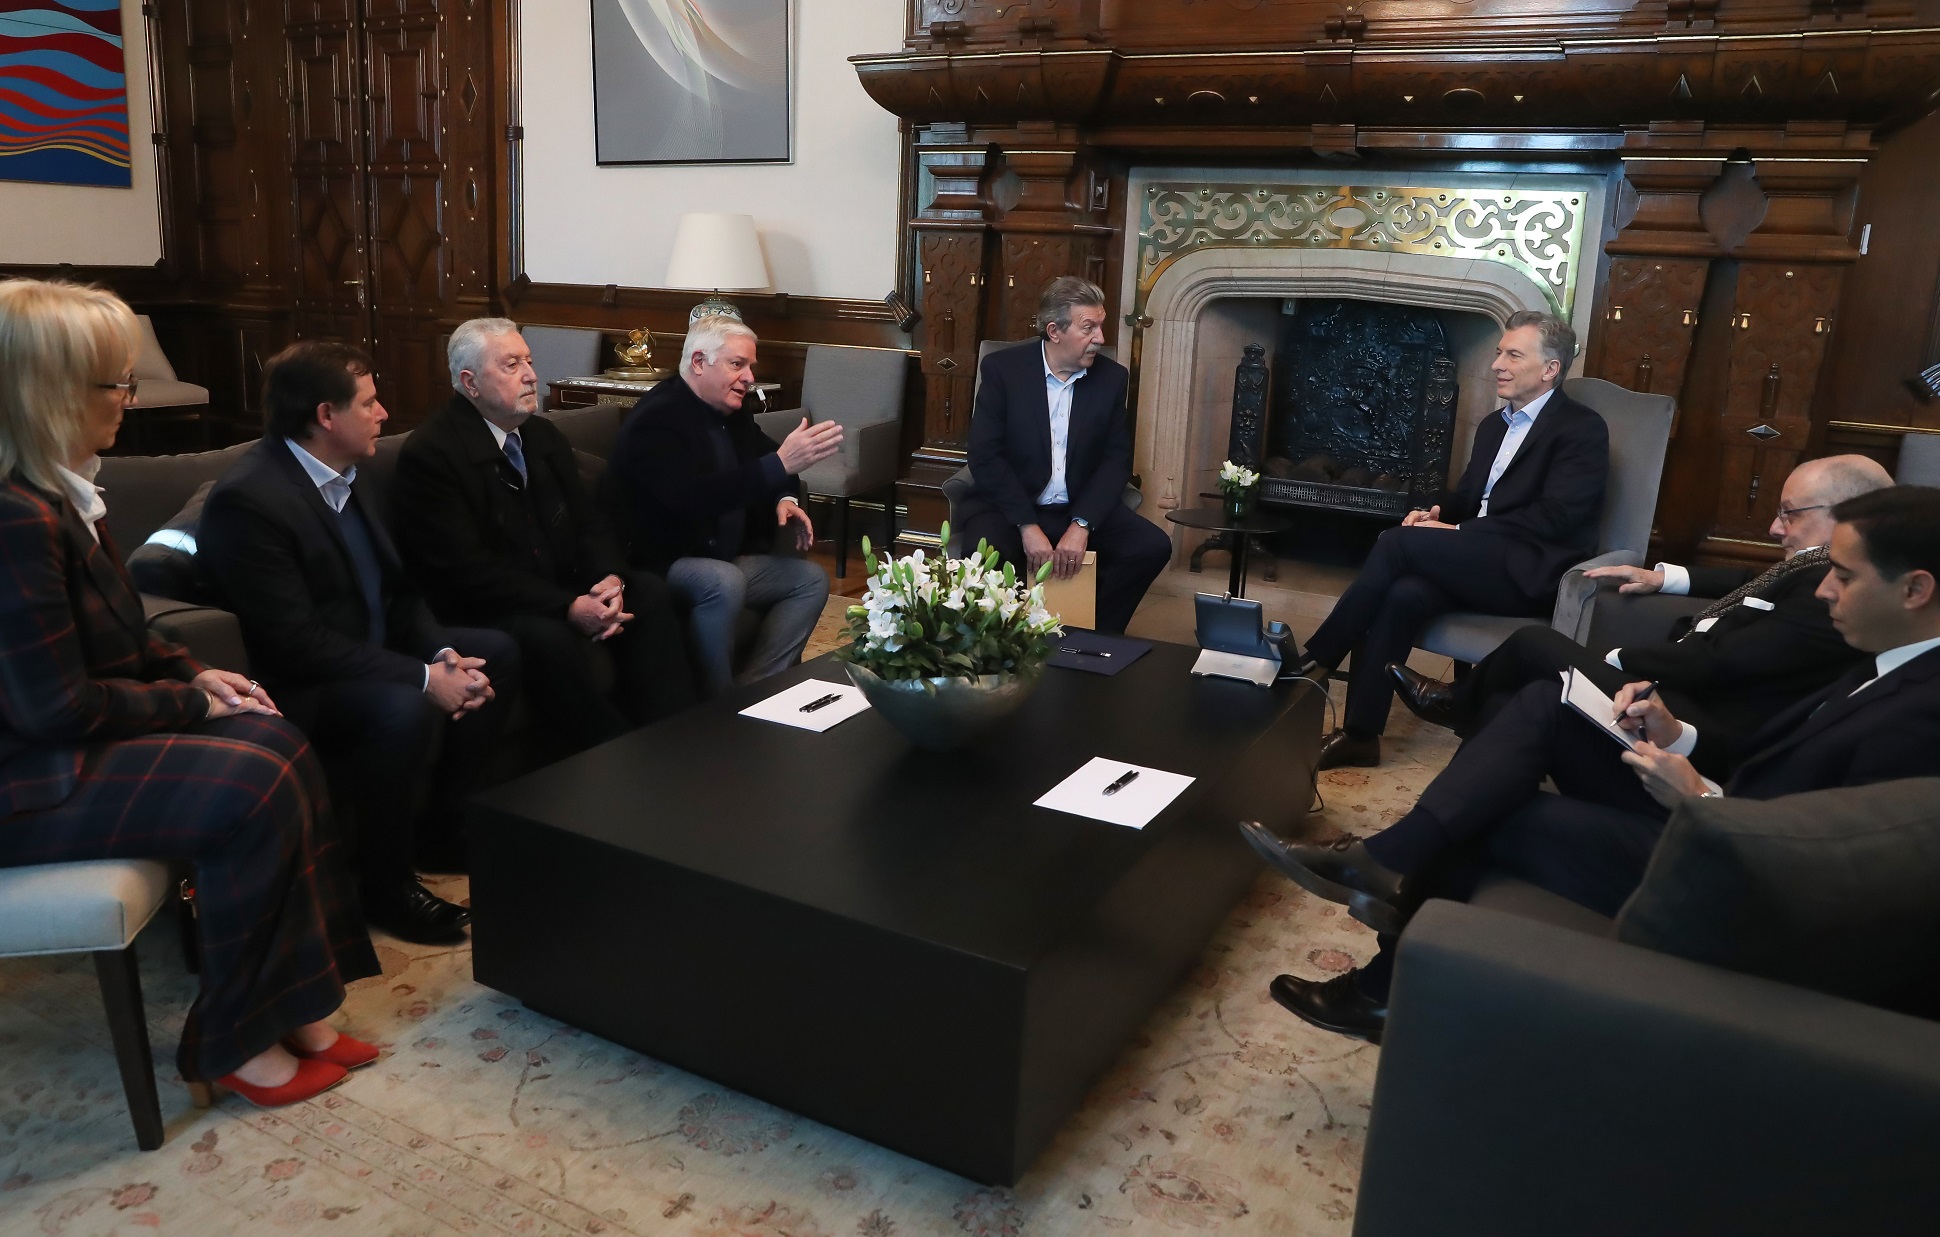 El presidente Macri recibió a líderes evangélicos